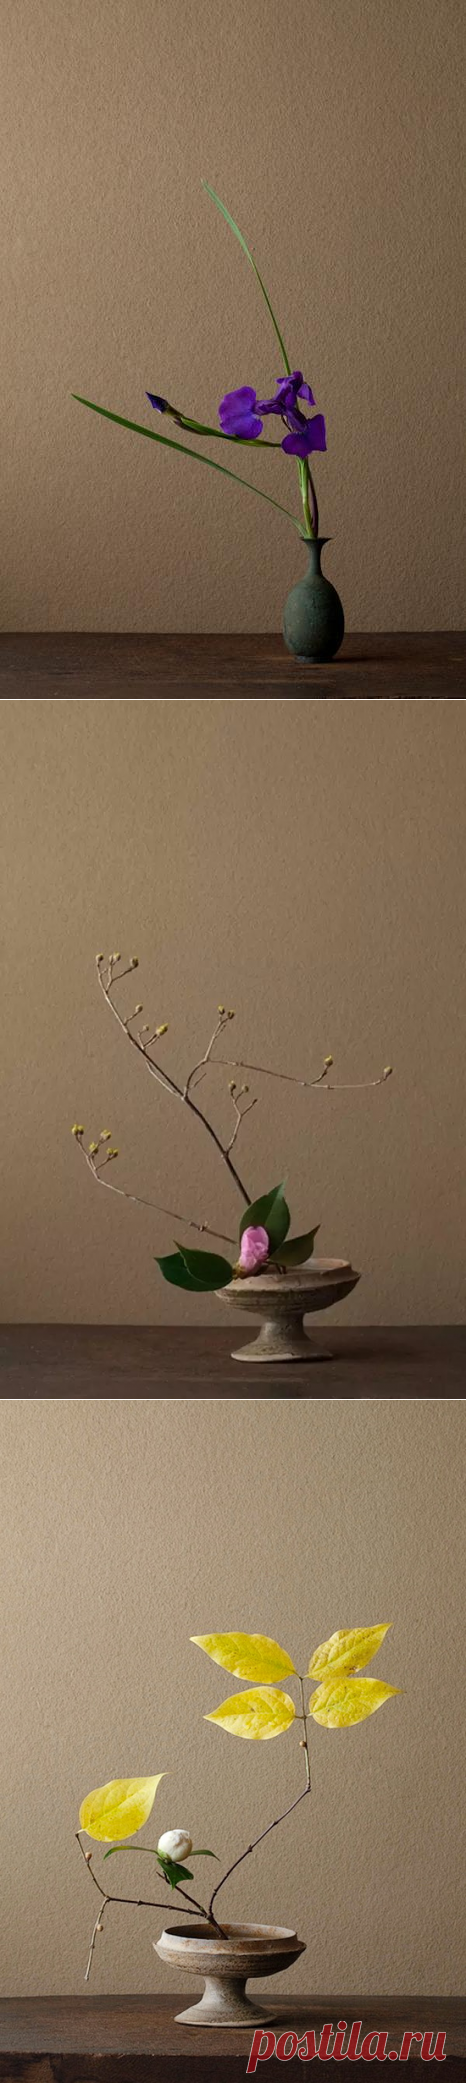 Икебана - цветы которые живут